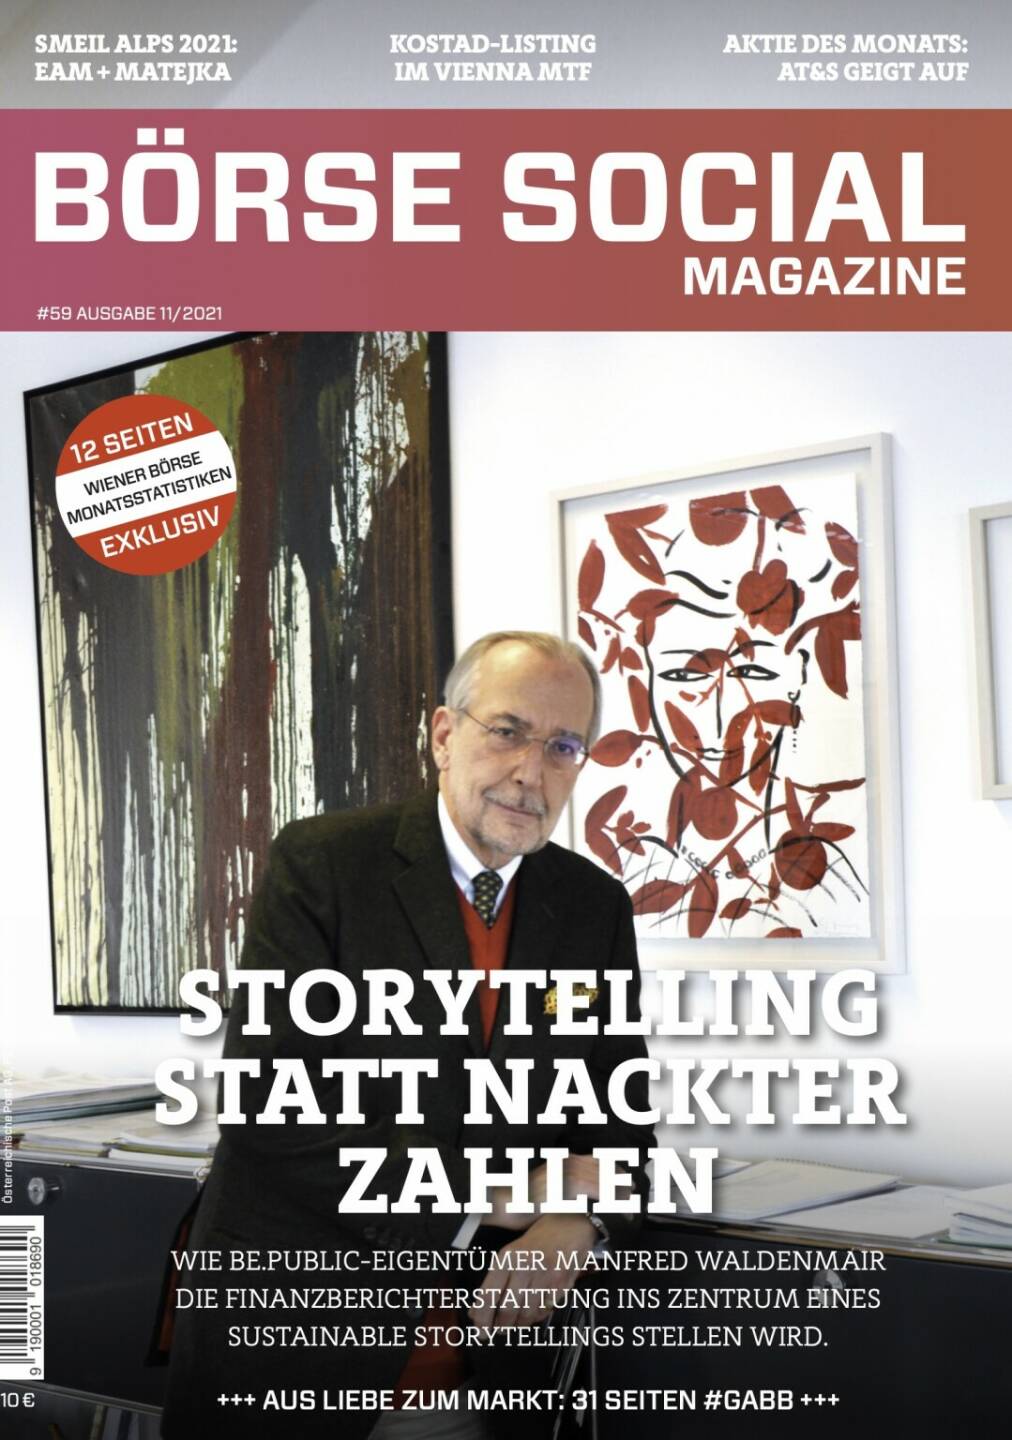 Magazine #59 - Storytelling statt nackter Zahlen - Wie be.public-Eigentümer Manfred Waldenmair die Finanzberichterstattung ins Zentrum eines Sustainable Storytellings stellen wird.